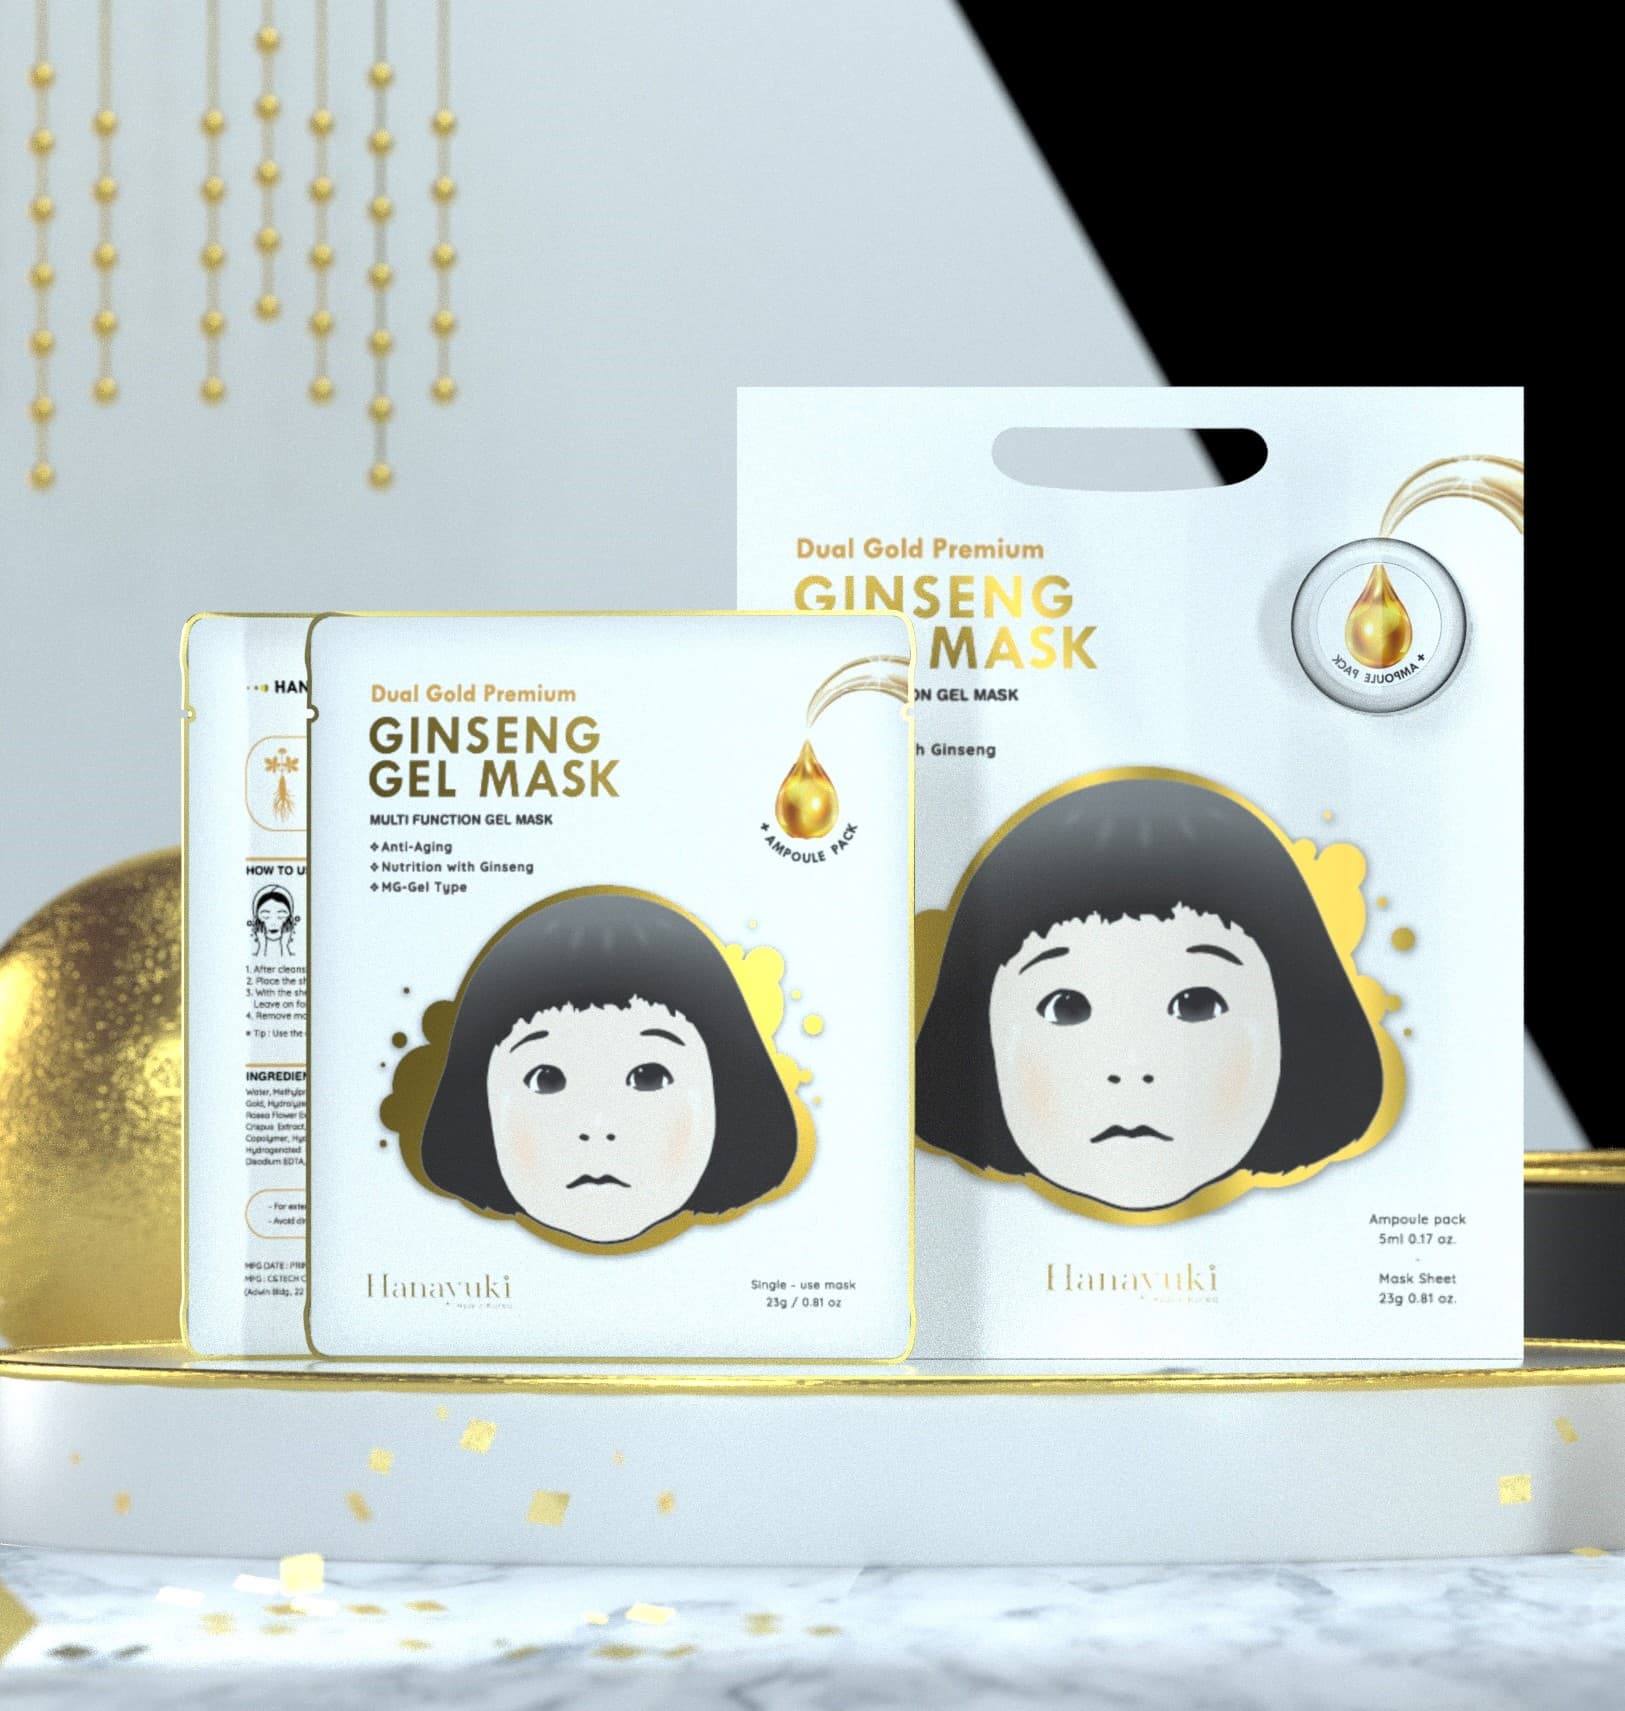 Dual Gold Premium Ginseng Gel Mask